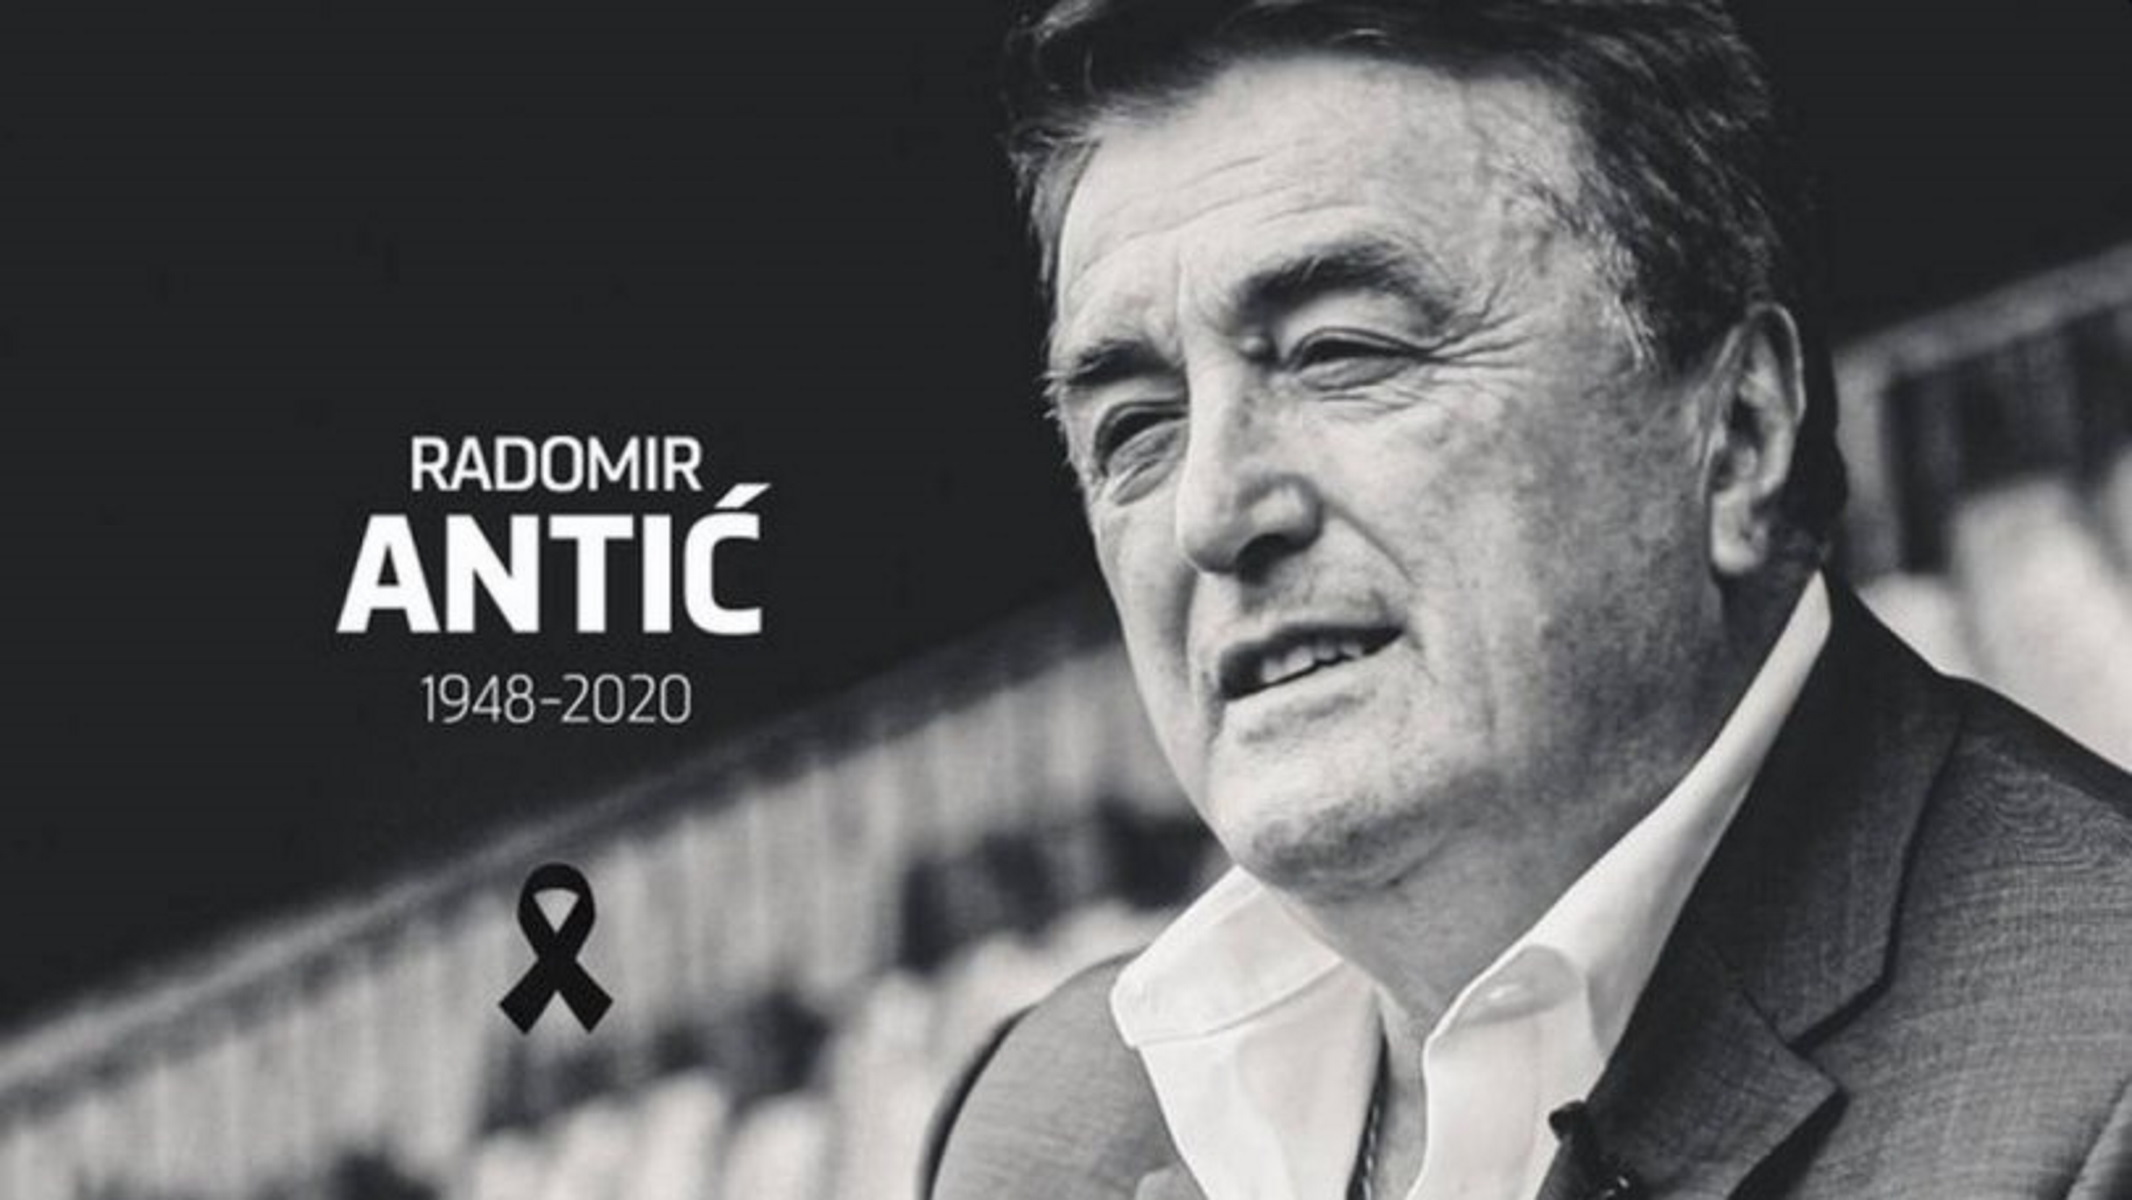 Πέθανε ο “θρυλικός” προπονητής Ράντομιρ Άντιτς